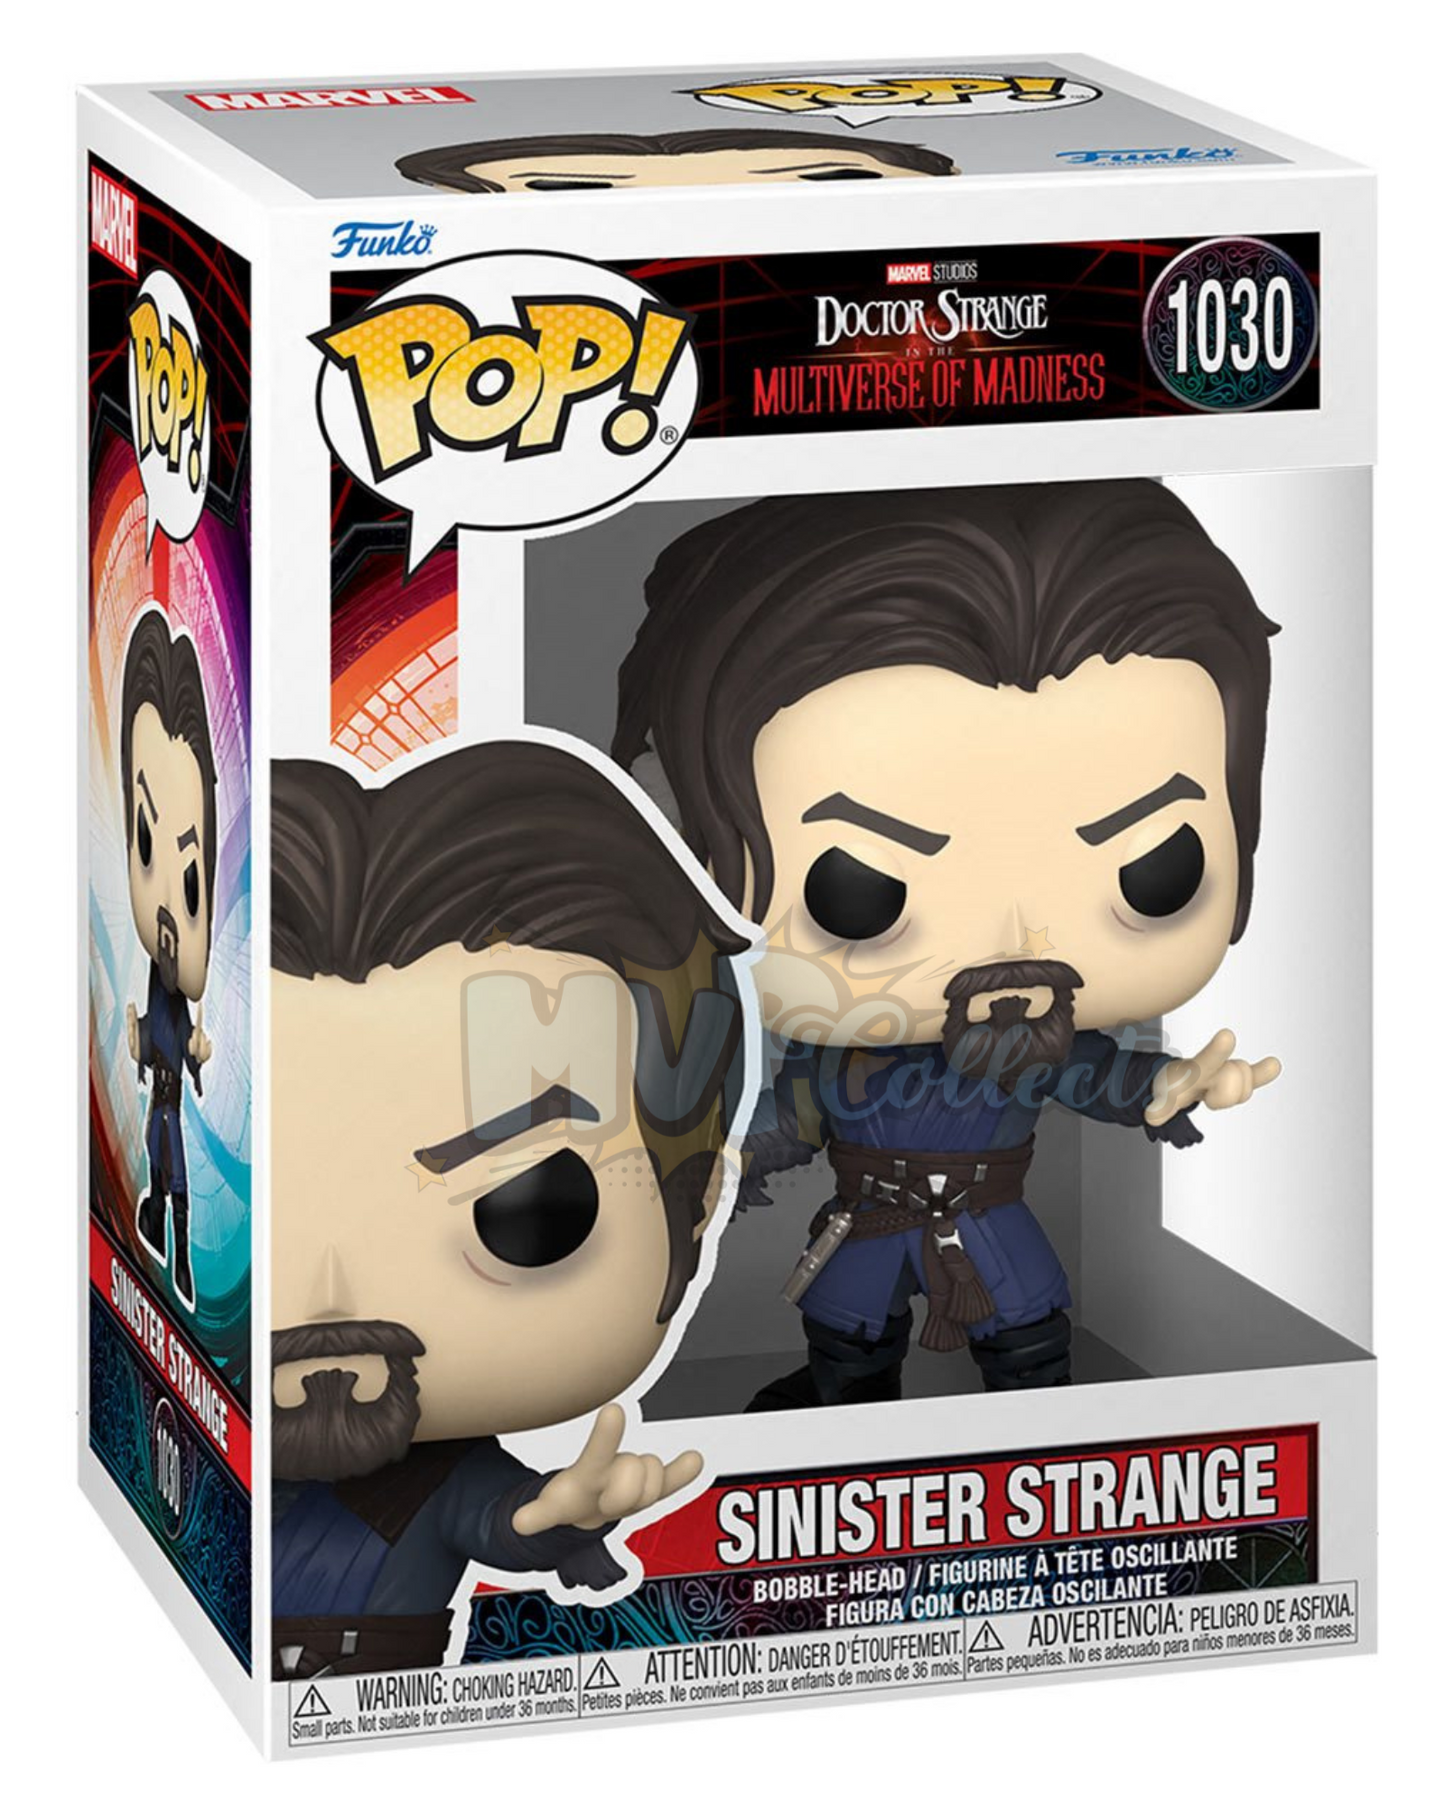 Sinister Strange POP! Dr. Strange Multiverse of Madness - 1030